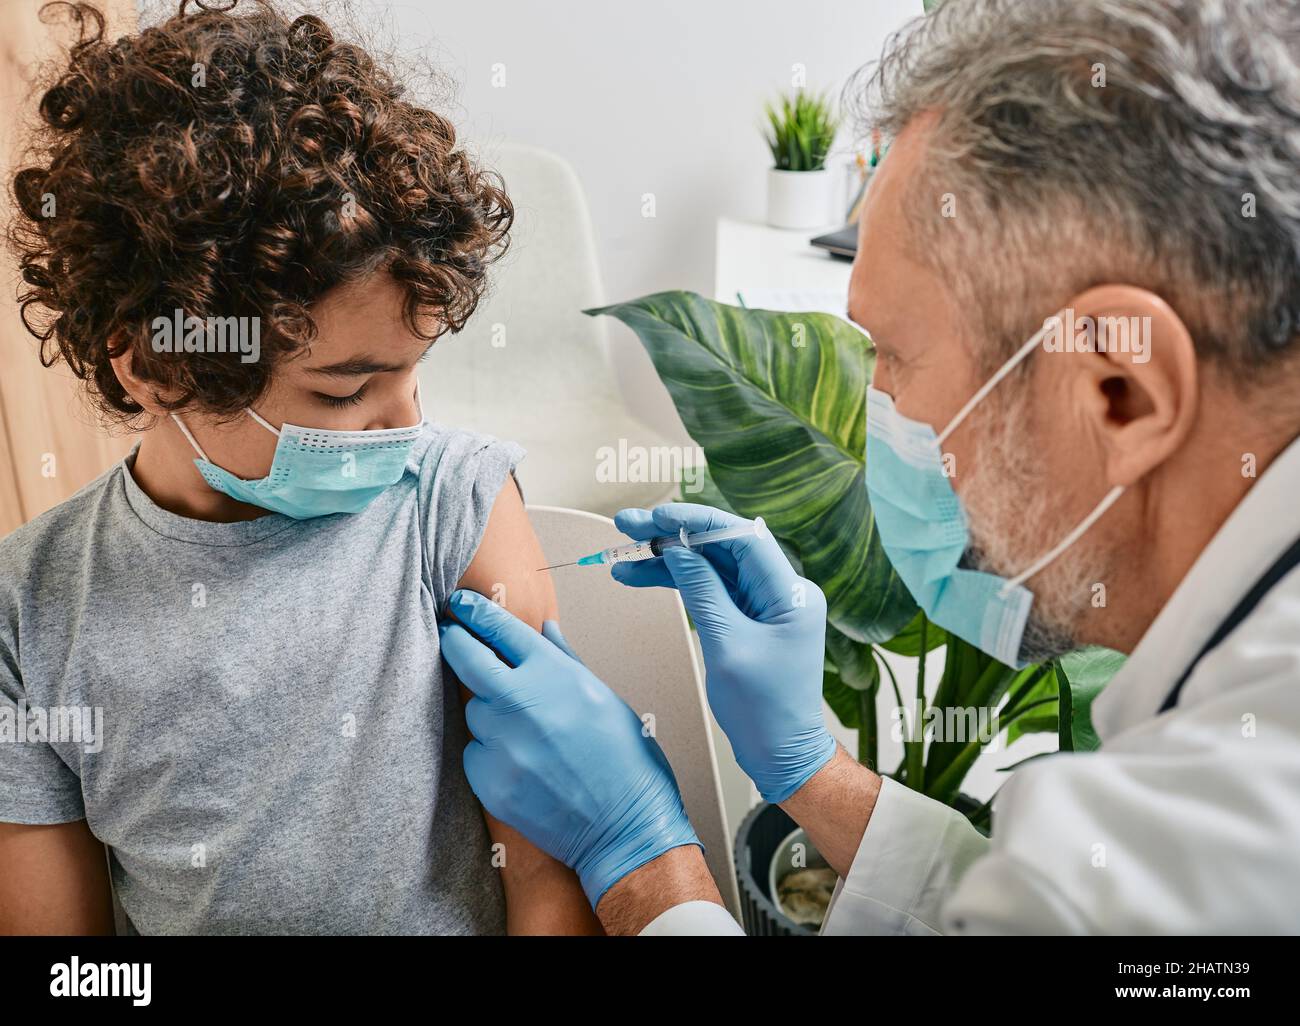 Vaccinations de routine pour un enfant.Un garçon aux cheveux bouclés portant un masque médical lorsqu'il est vacciné par un pédiatre mature à la clinique médicale Banque D'Images